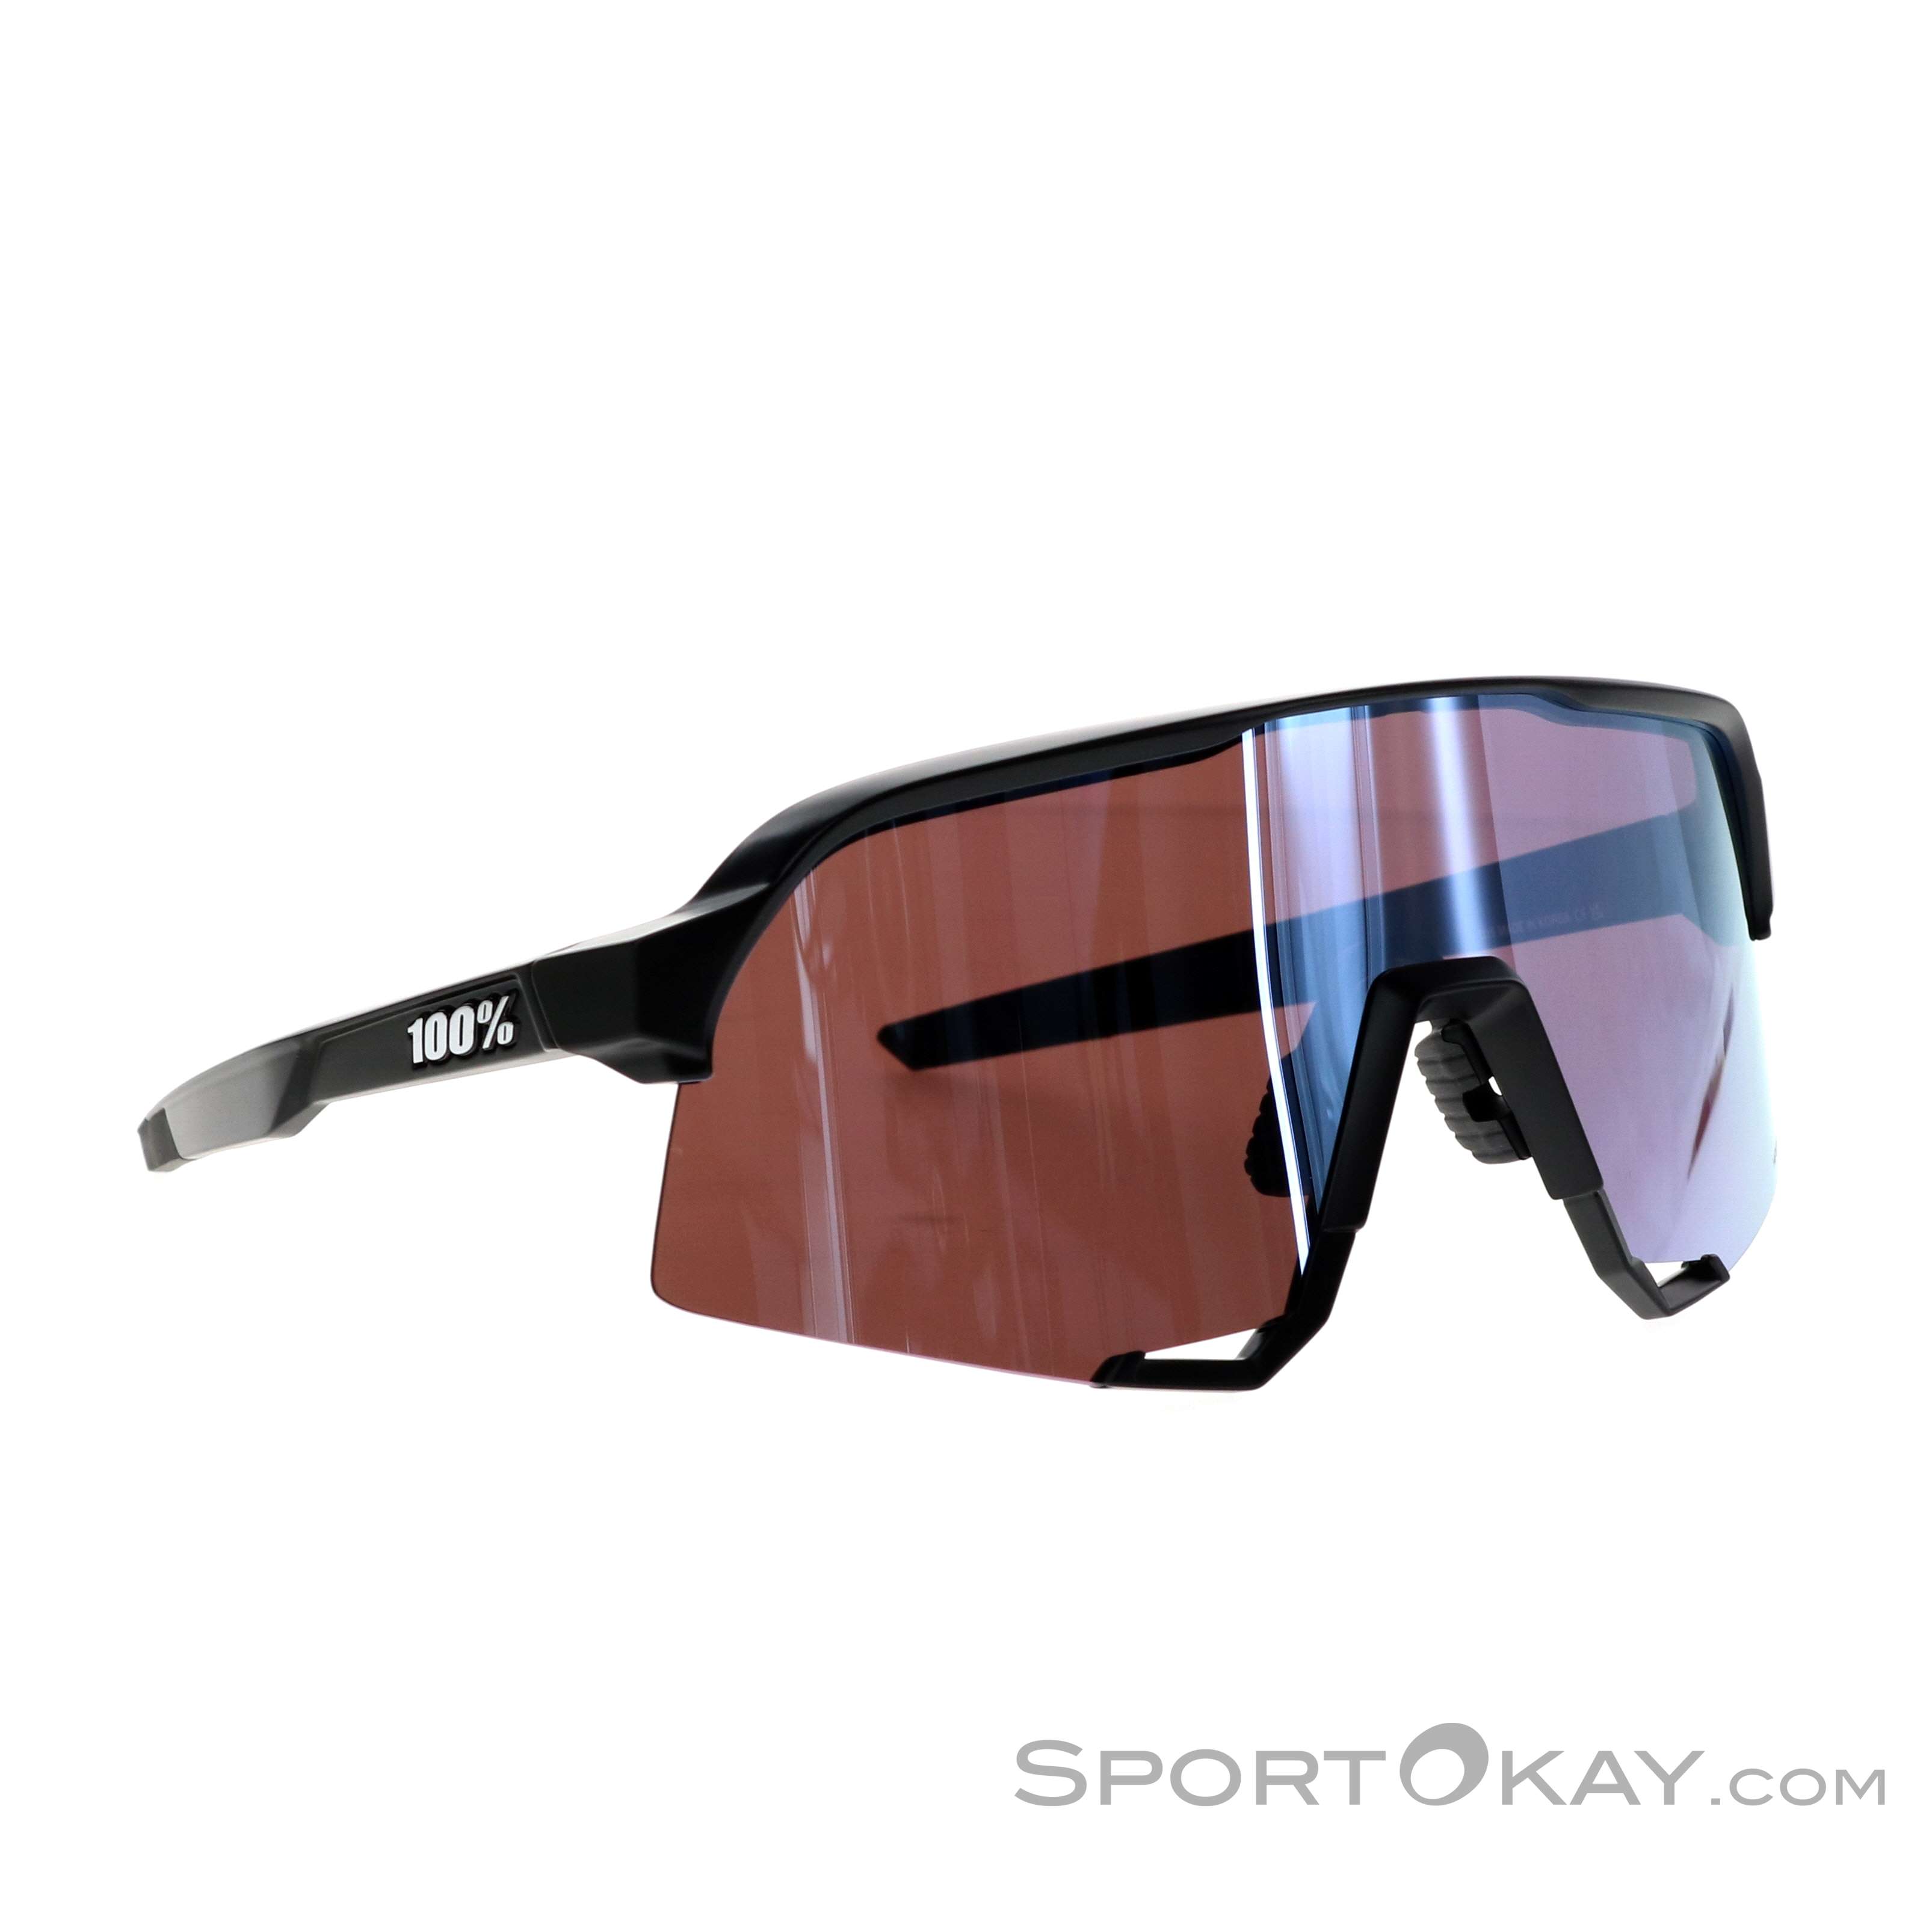 100% S3 Hiper Lens Sunglasses - Sports Sunglasses - Glasses - Bike